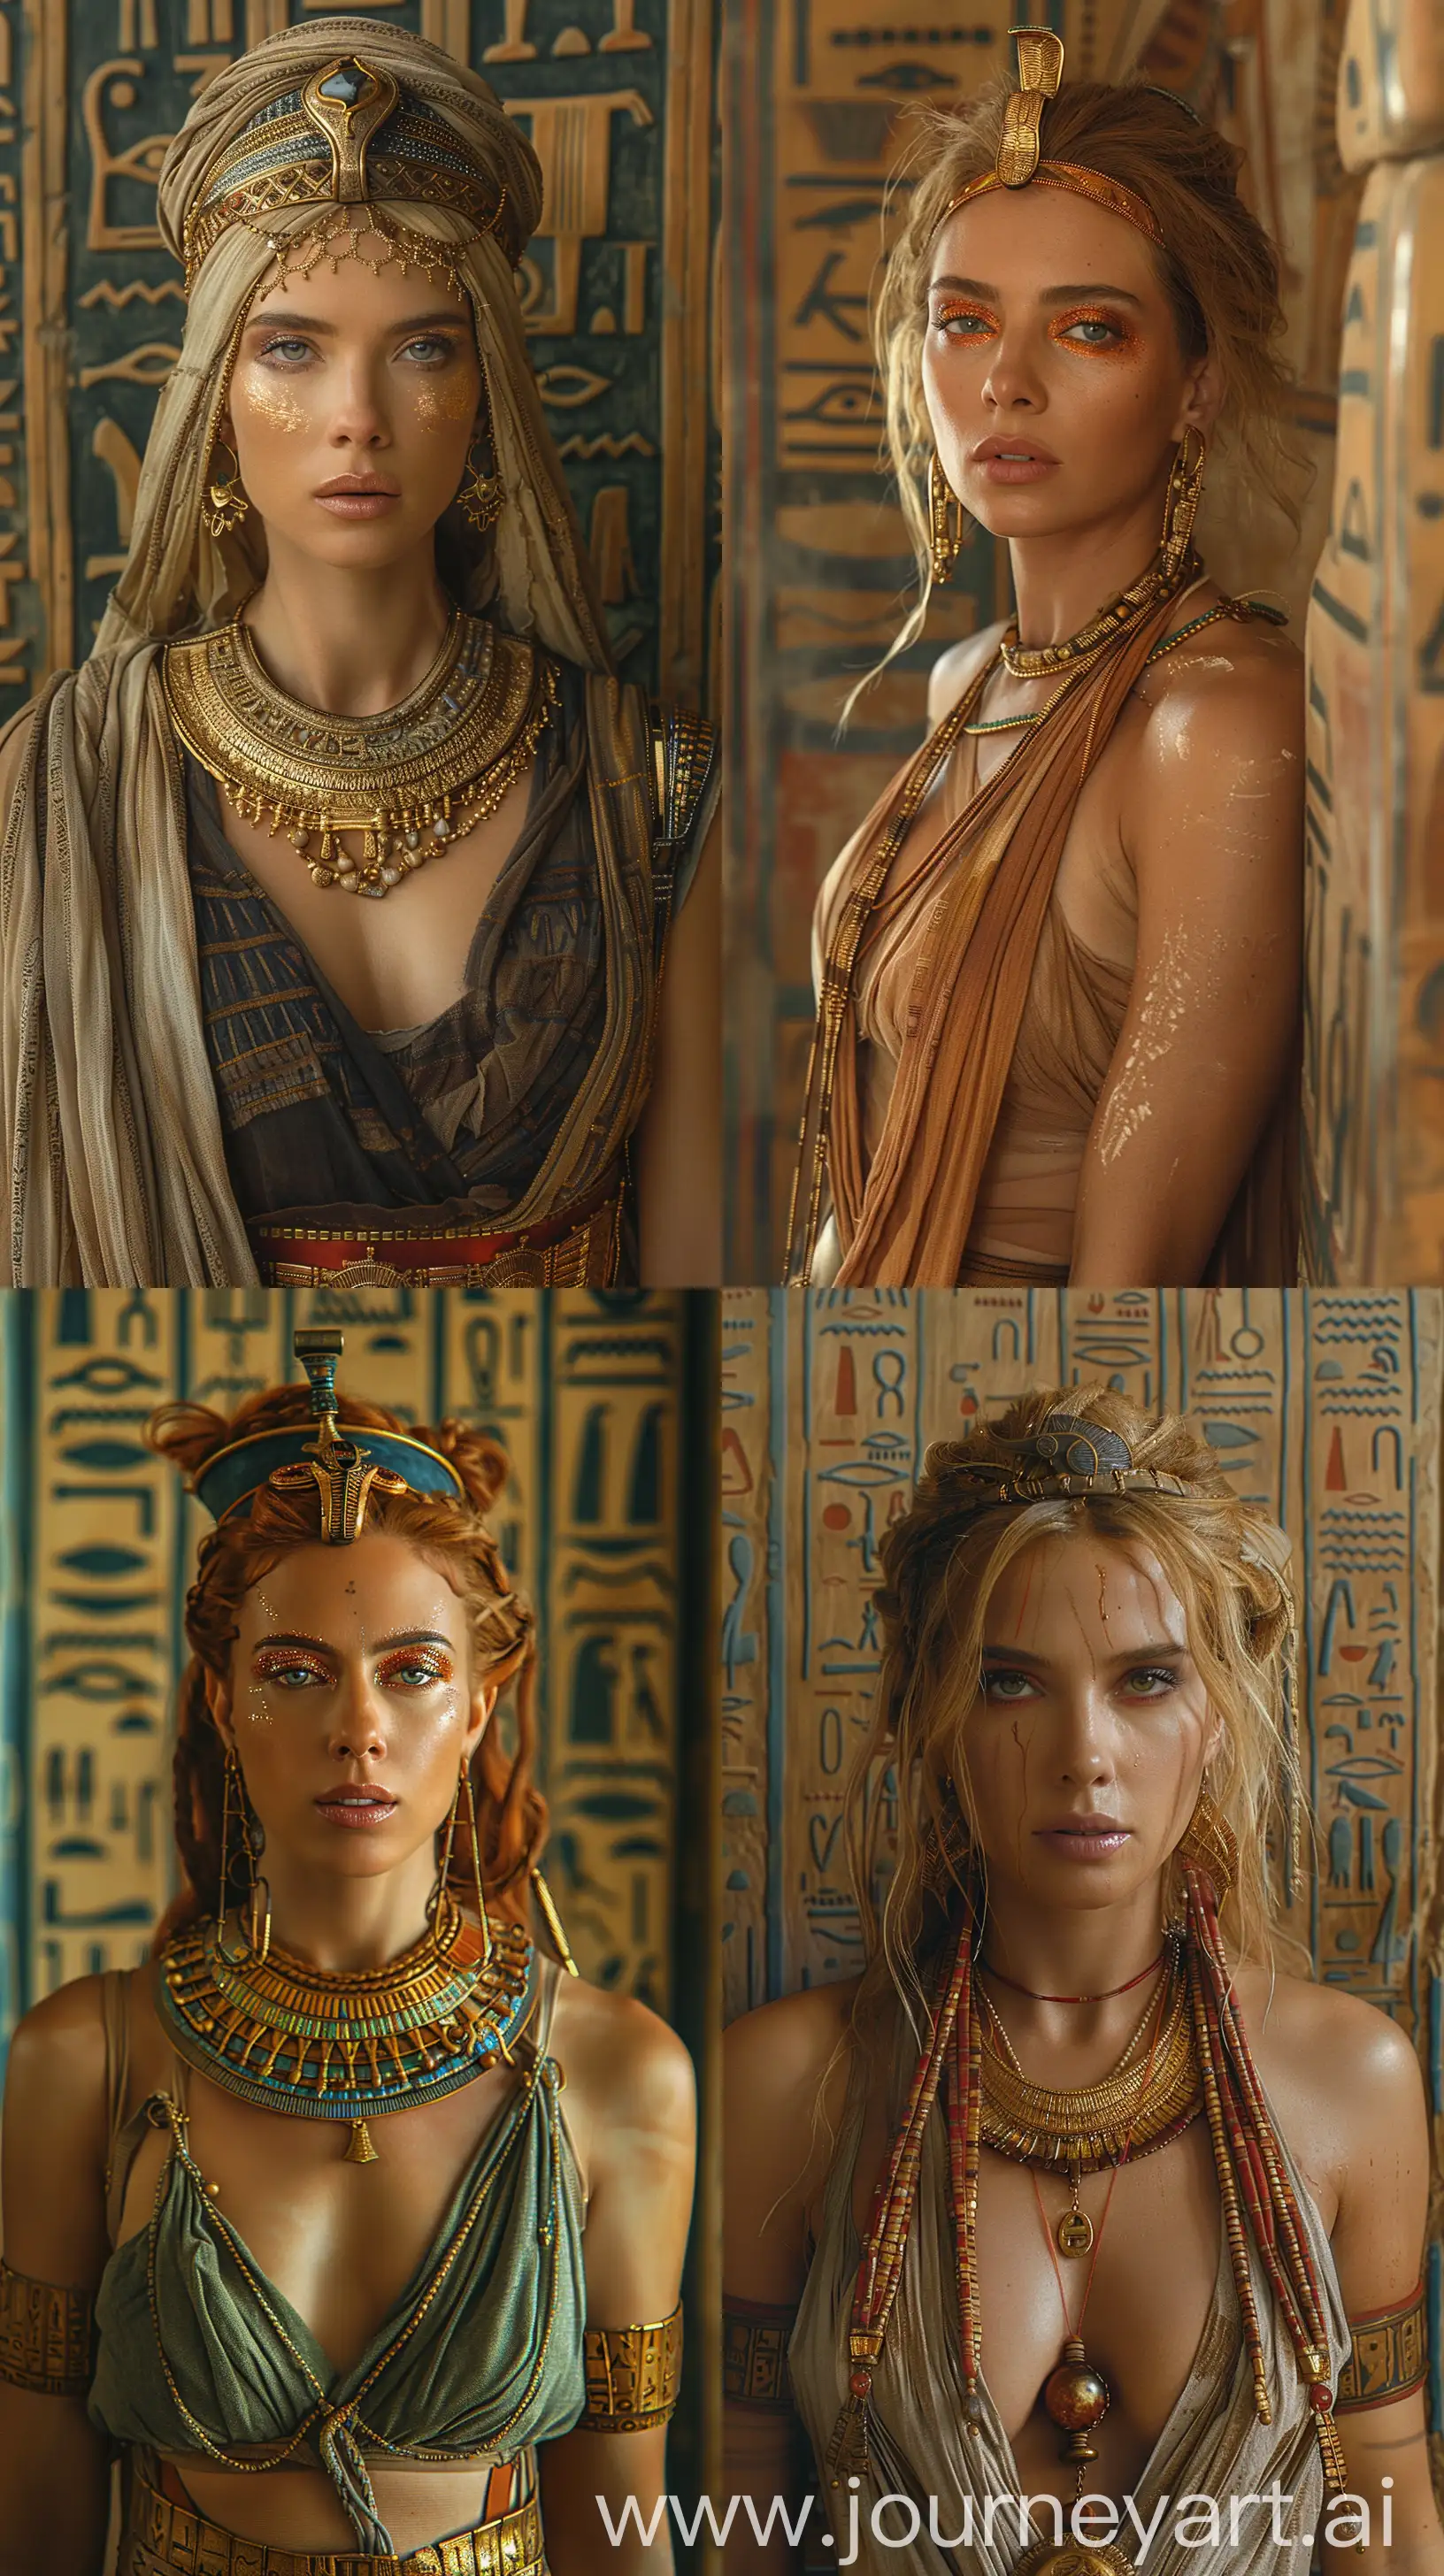 Scarlett-Johansson-as-Regal-Egyptian-Queen-Ornate-Jewelry-Hieroglyphic-Backdrop